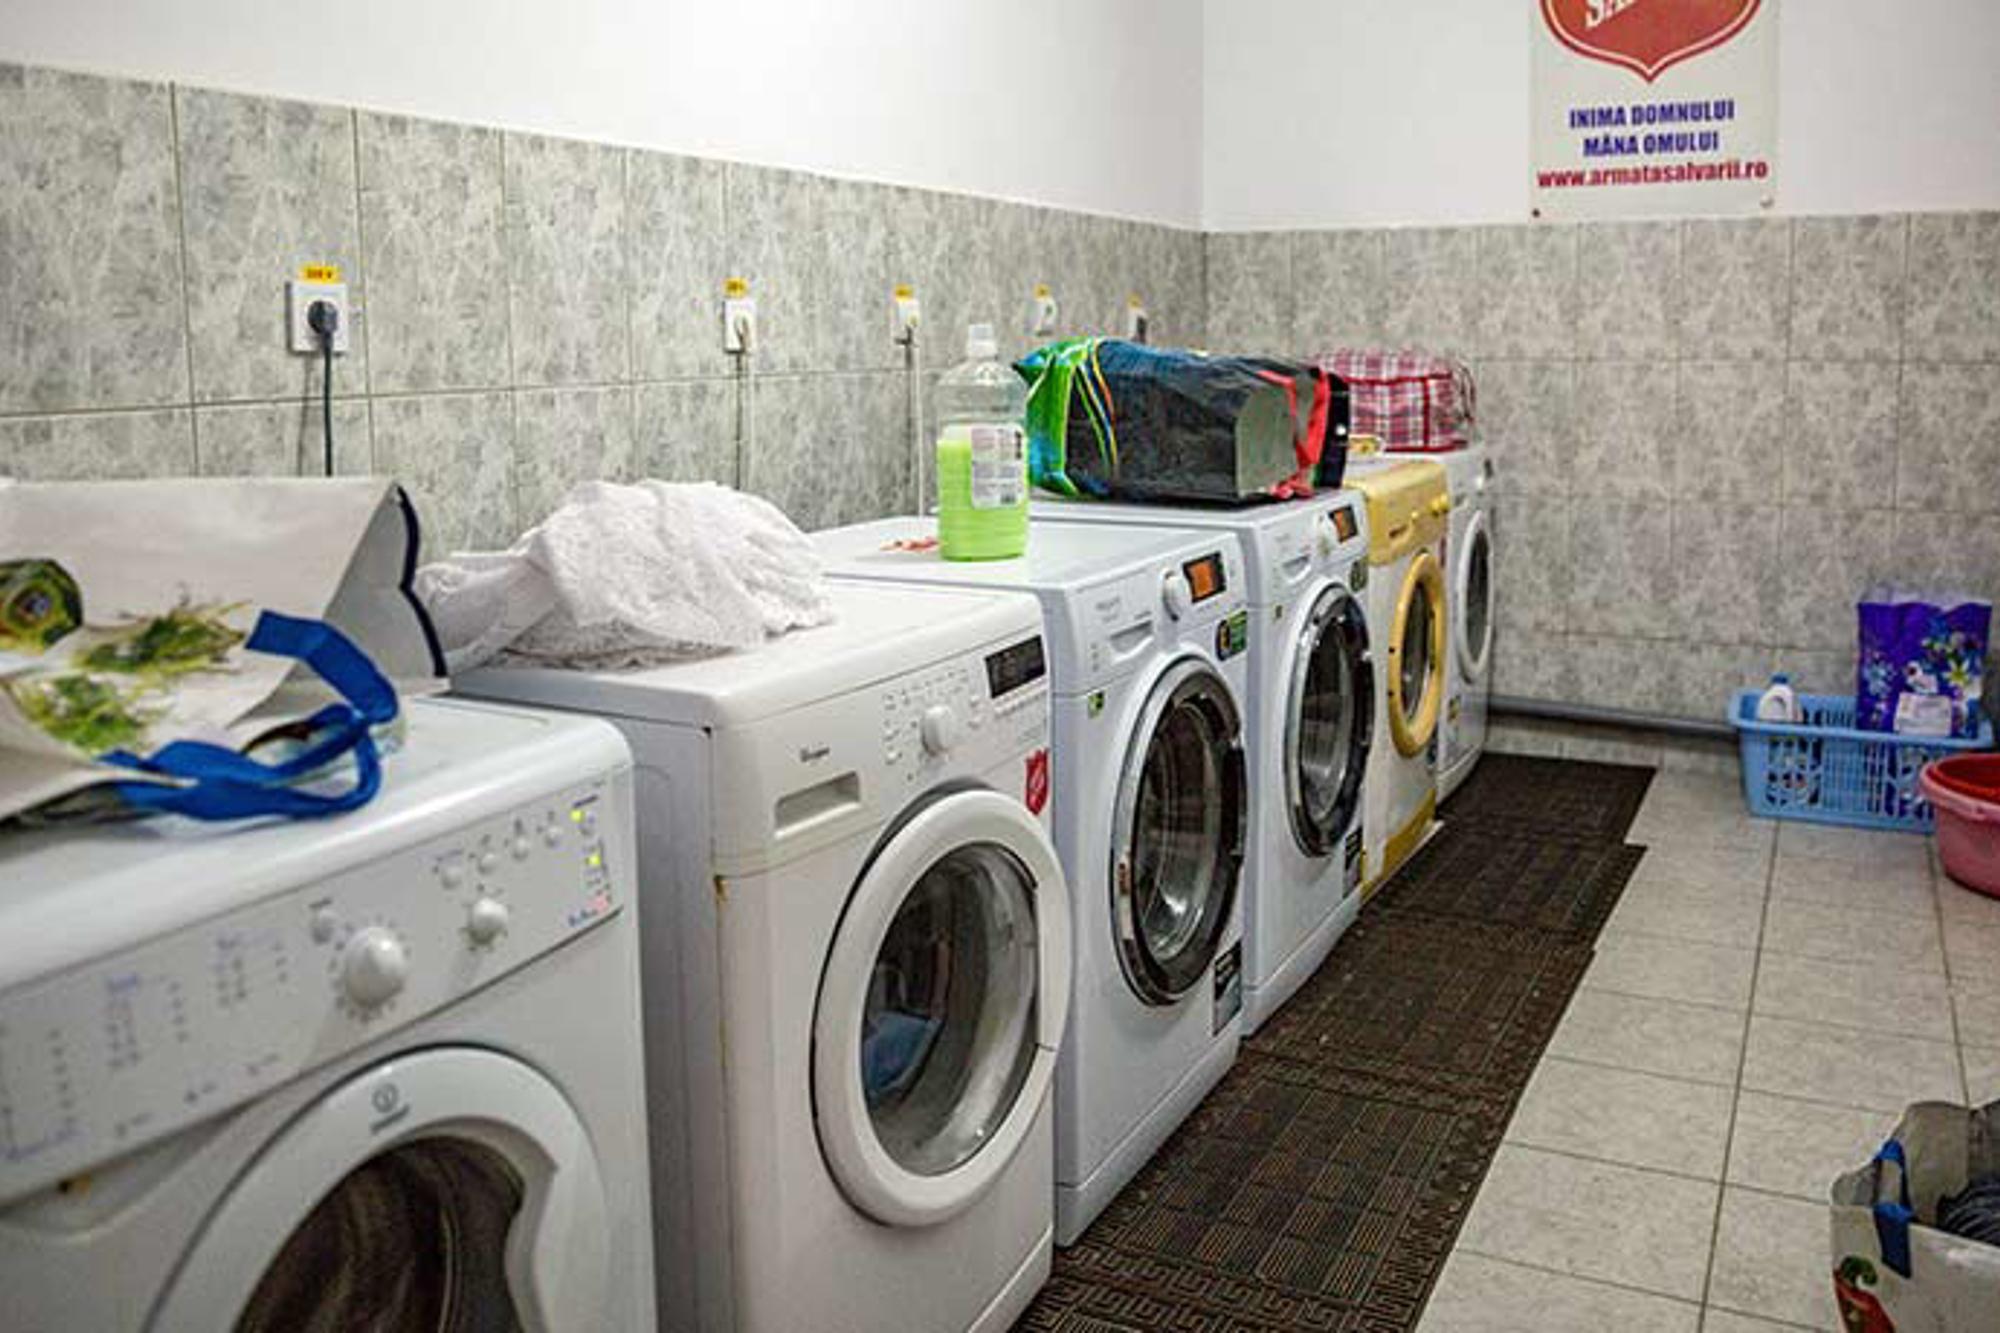 En tvättstuga med 6 tvättmaskiner som står på rad. I tvättstugan ligger det kassar, tvättmedel och sköljmedel. 